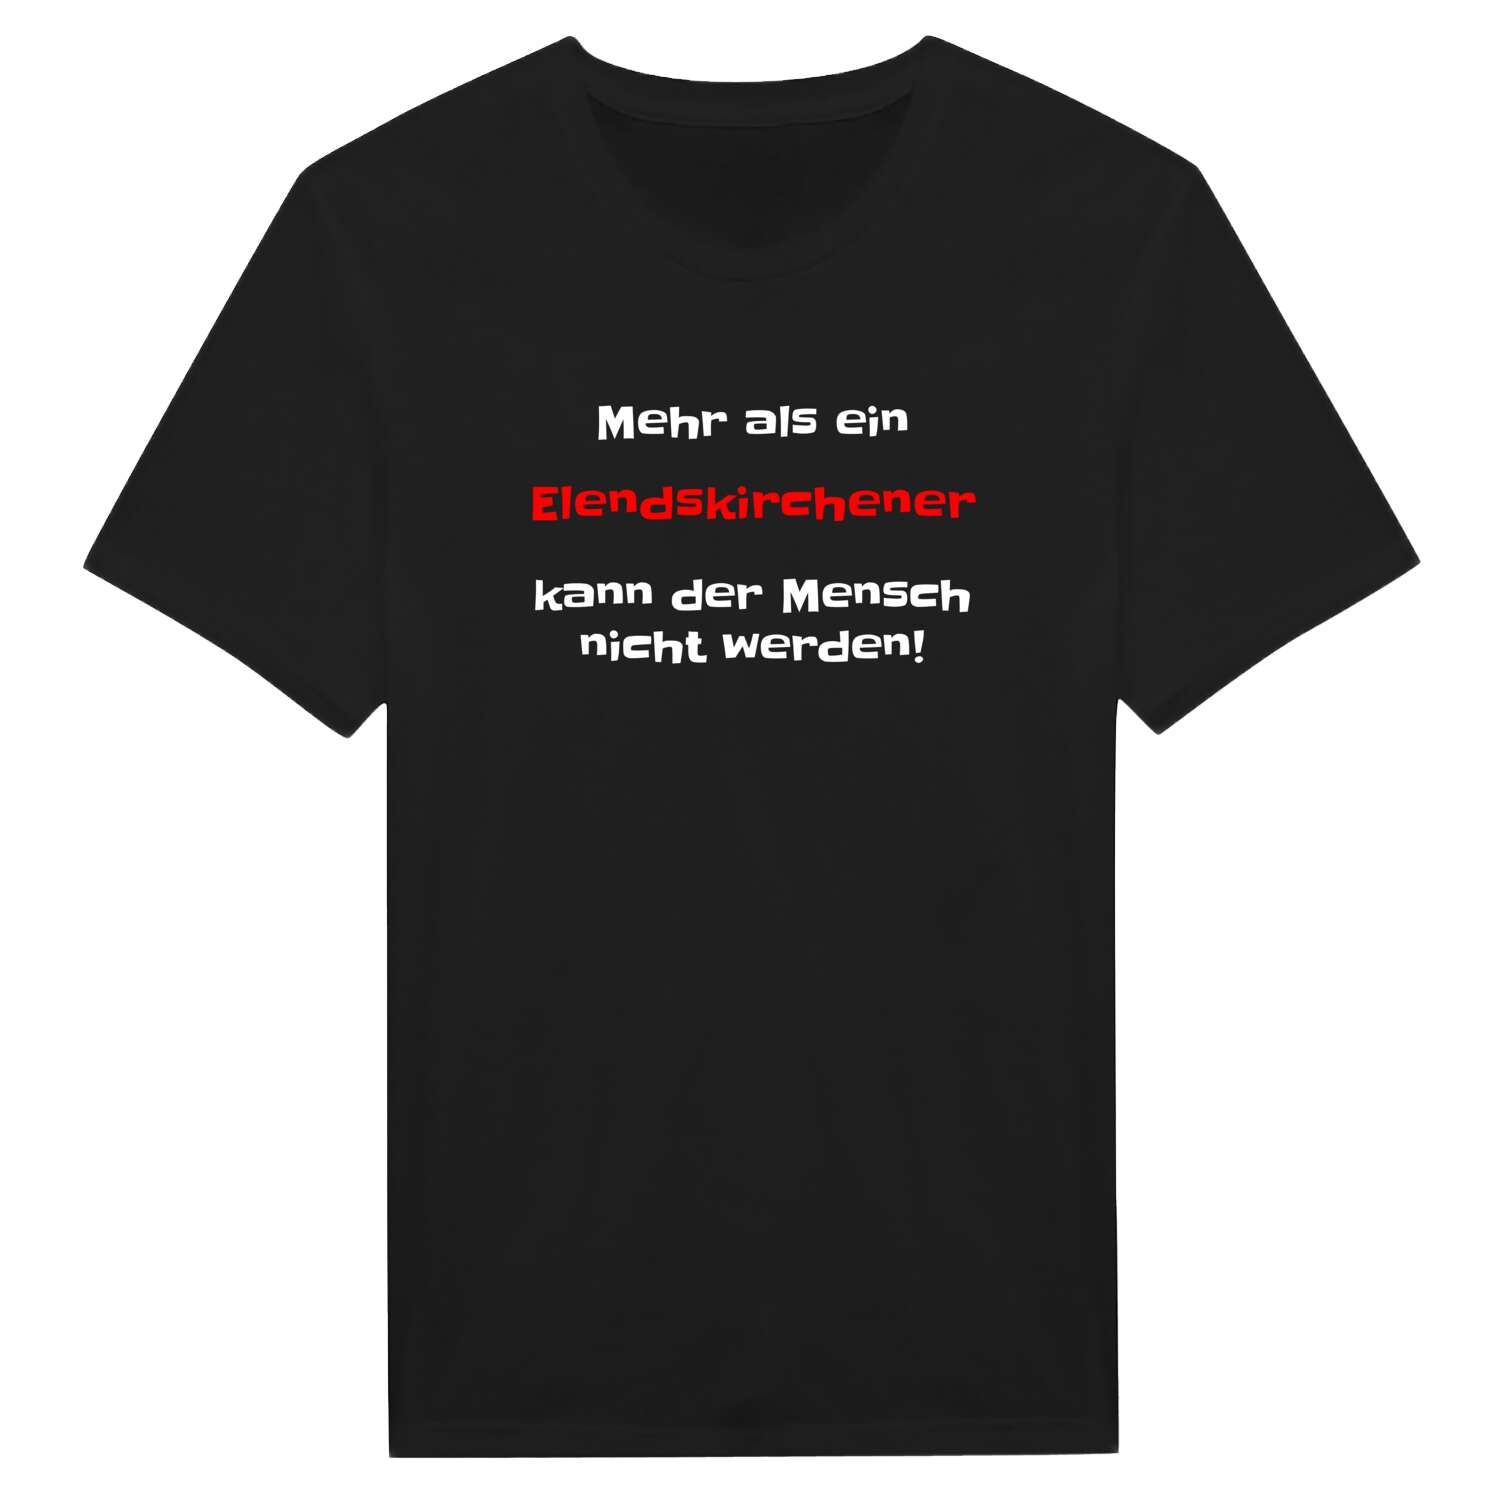 Elendskirchen T-Shirt »Mehr als ein«